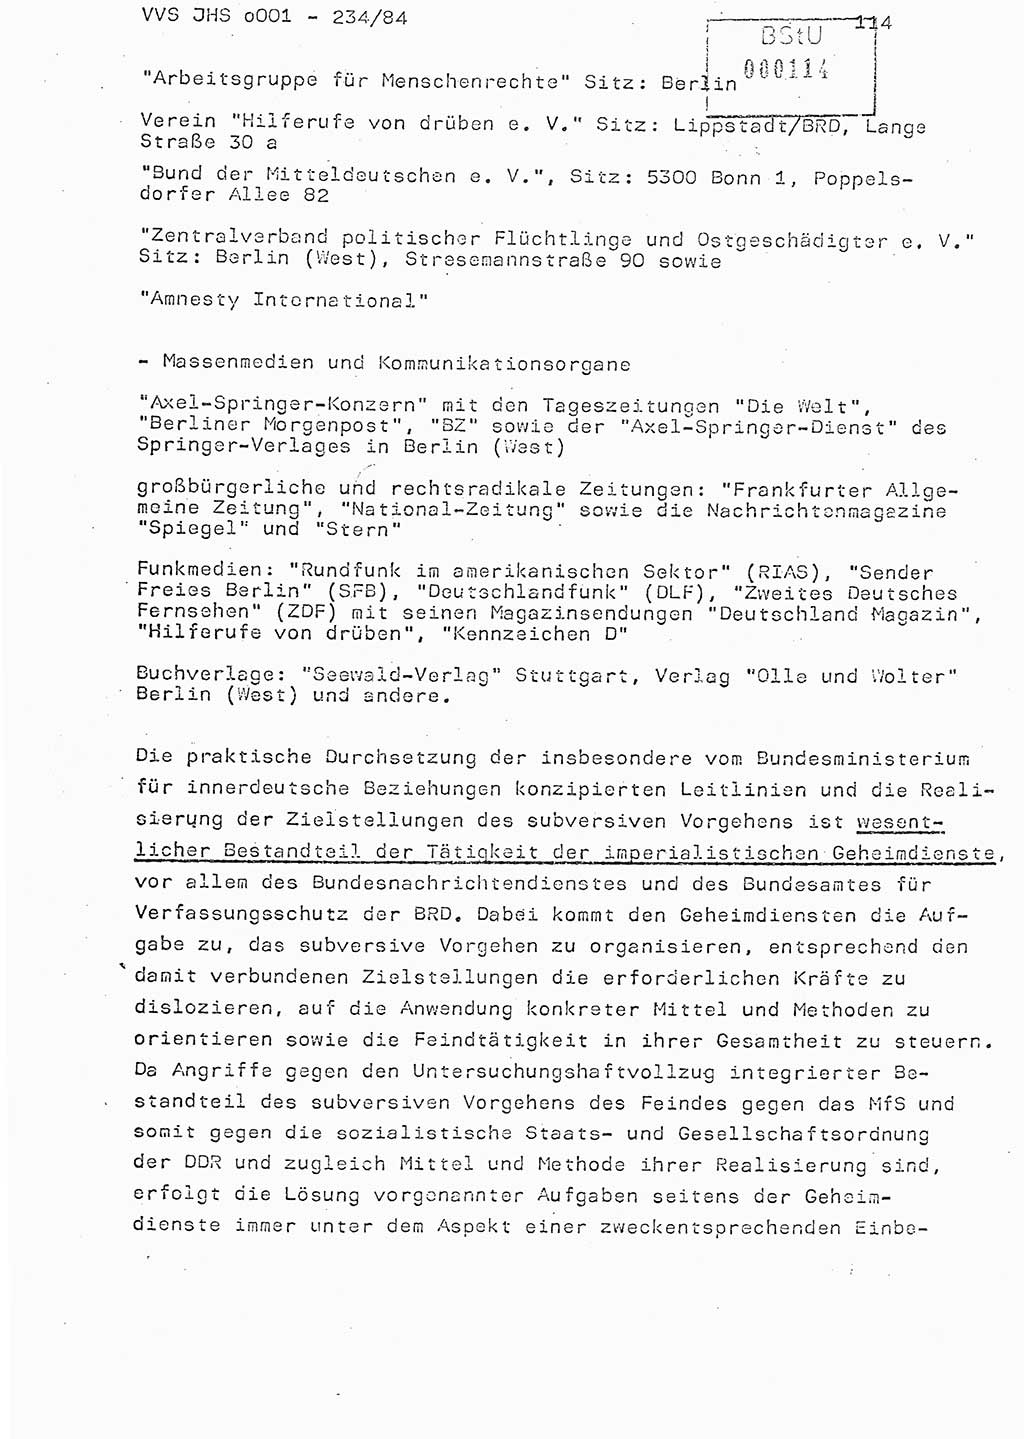 Dissertation Oberst Siegfried Rataizick (Abt. ⅩⅣ), Oberstleutnant Volkmar Heinz (Abt. ⅩⅣ), Oberstleutnant Werner Stein (HA Ⅸ), Hauptmann Heinz Conrad (JHS), Ministerium für Staatssicherheit (MfS) [Deutsche Demokratische Republik (DDR)], Juristische Hochschule (JHS), Vertrauliche Verschlußsache (VVS) o001-234/84, Potsdam 1984, Seite 114 (Diss. MfS DDR JHS VVS o001-234/84 1984, S. 114)